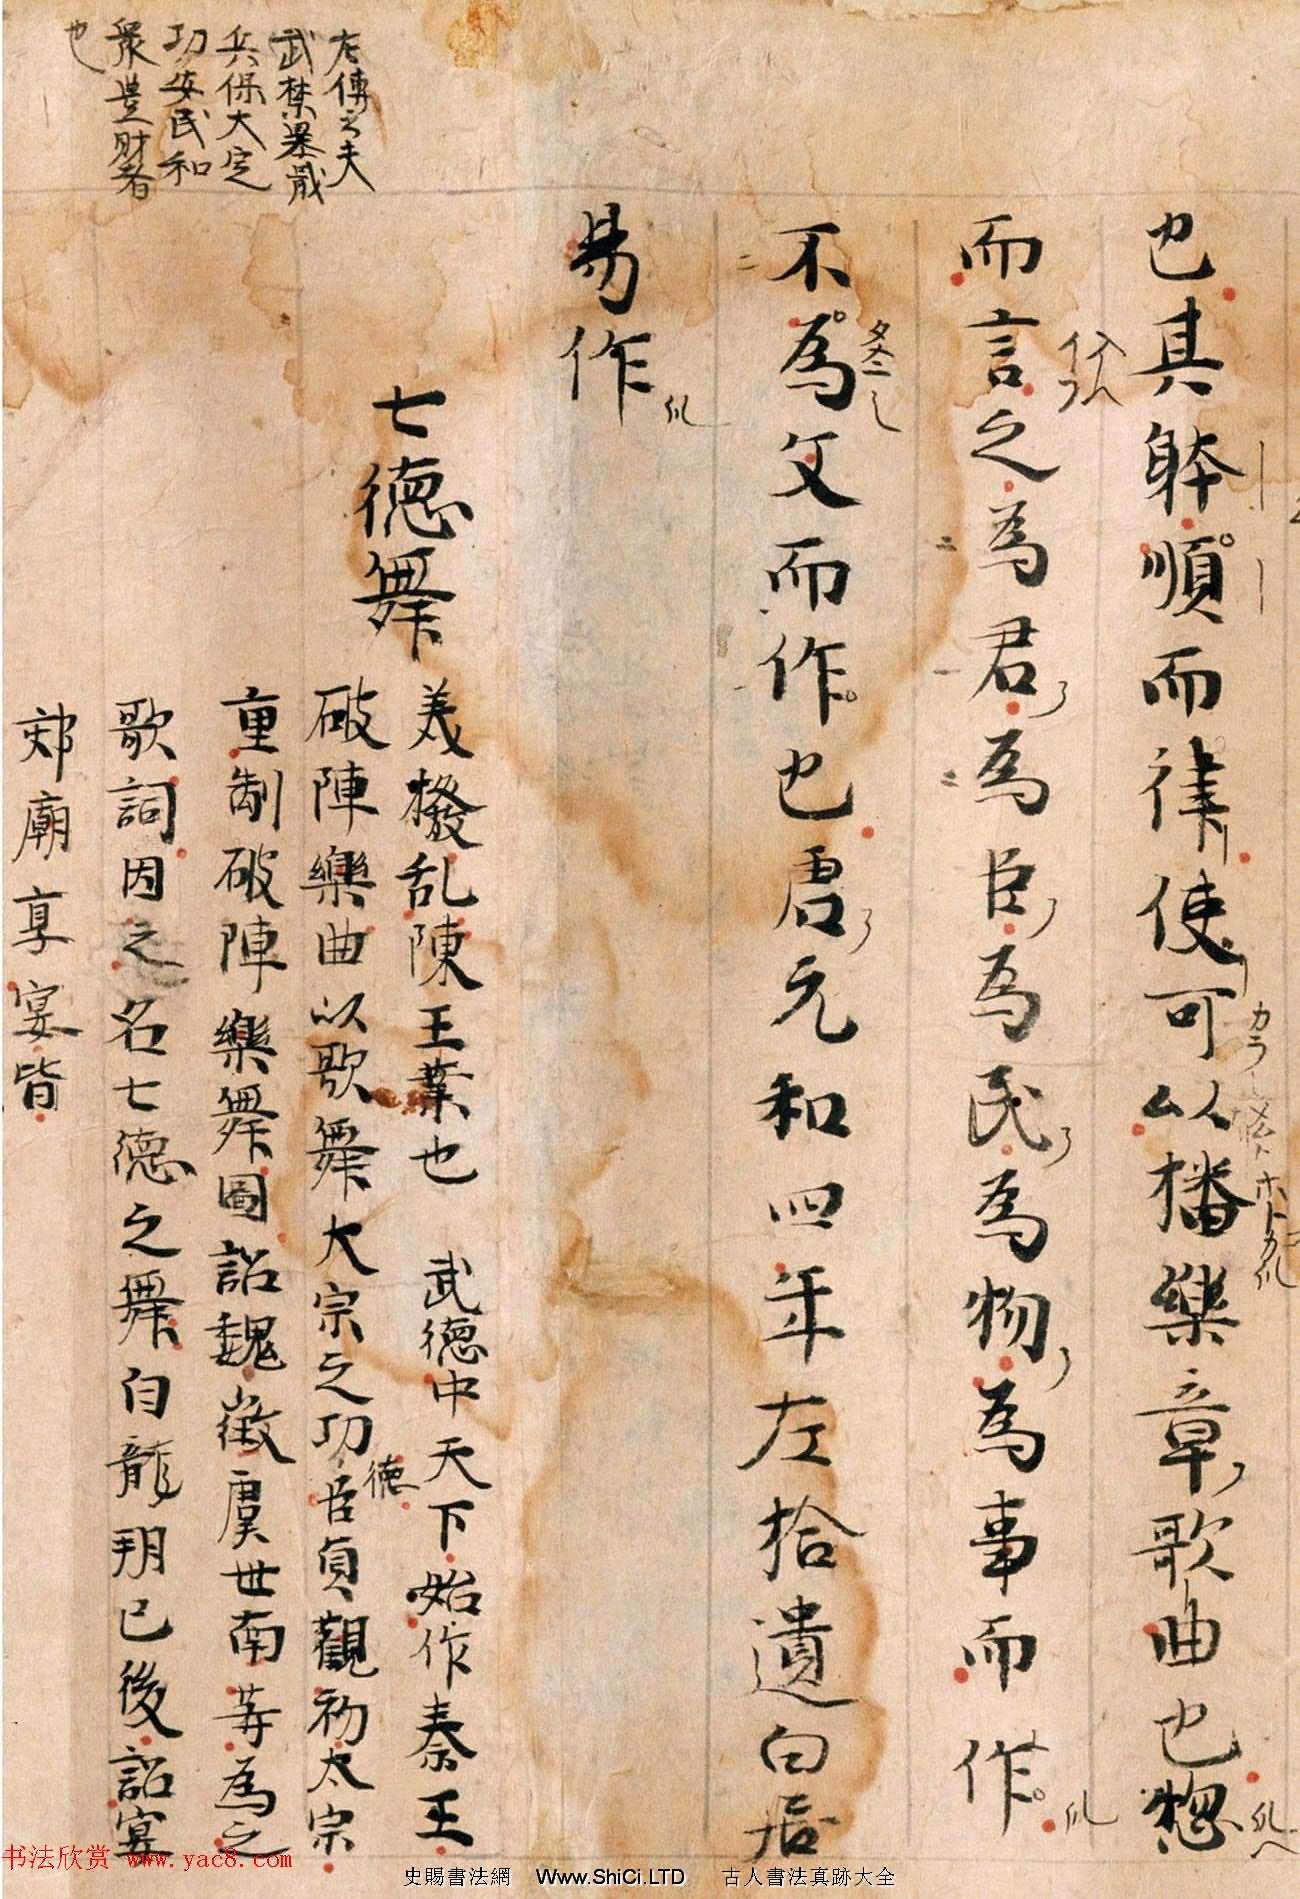 唐代詩人白居易手跡《白氏文集古抄殘卷》